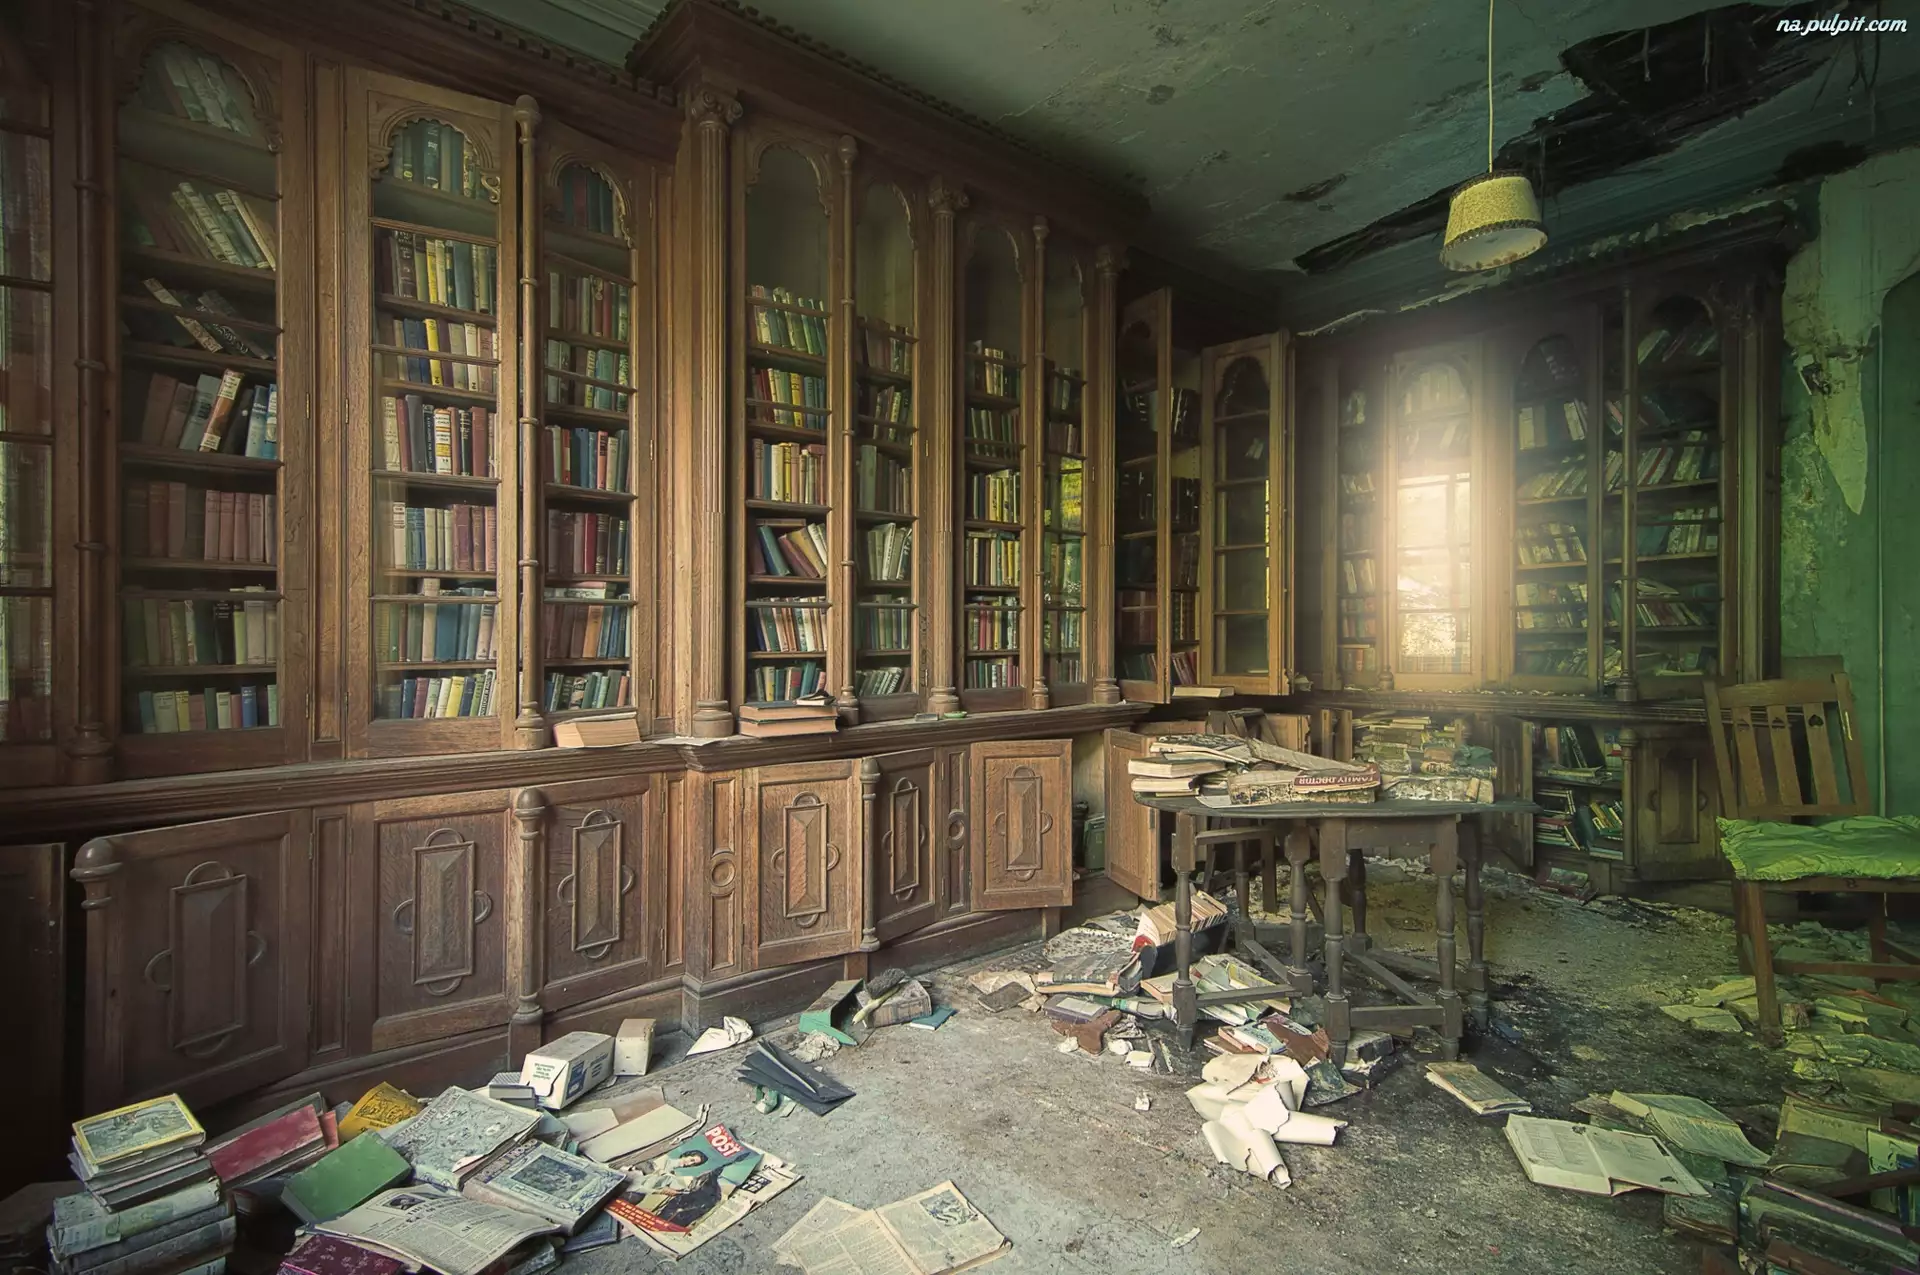 Biblioteka, Zaniedbana, Stara, Zniszczona